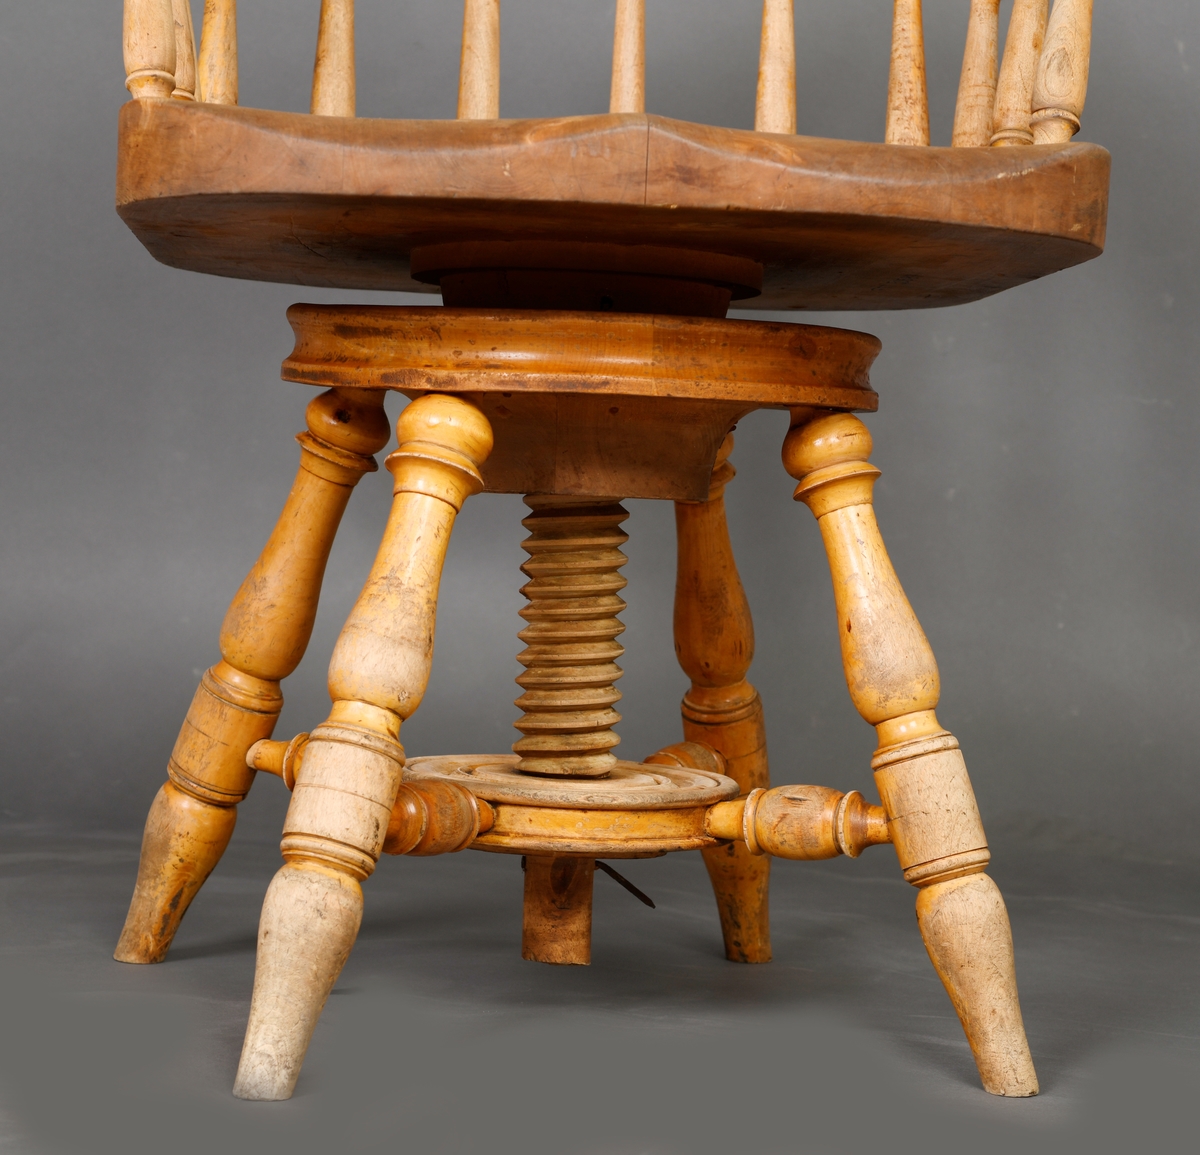 En stol med dreibart sete og armlener. Stolen er laget av heltre og har treforbindelser. Setet er bredt og dypt. Ryggen består av av 12 spiler/pinner som har enkel dreid dekor. Disse er festet i setet og i en bue som er øverst. Stolen har fire bein som står skrått ut fra midten på stolen. Midt under er det en konstruksjon som gjør at stolen er dreibar og kan justeres i høyden.